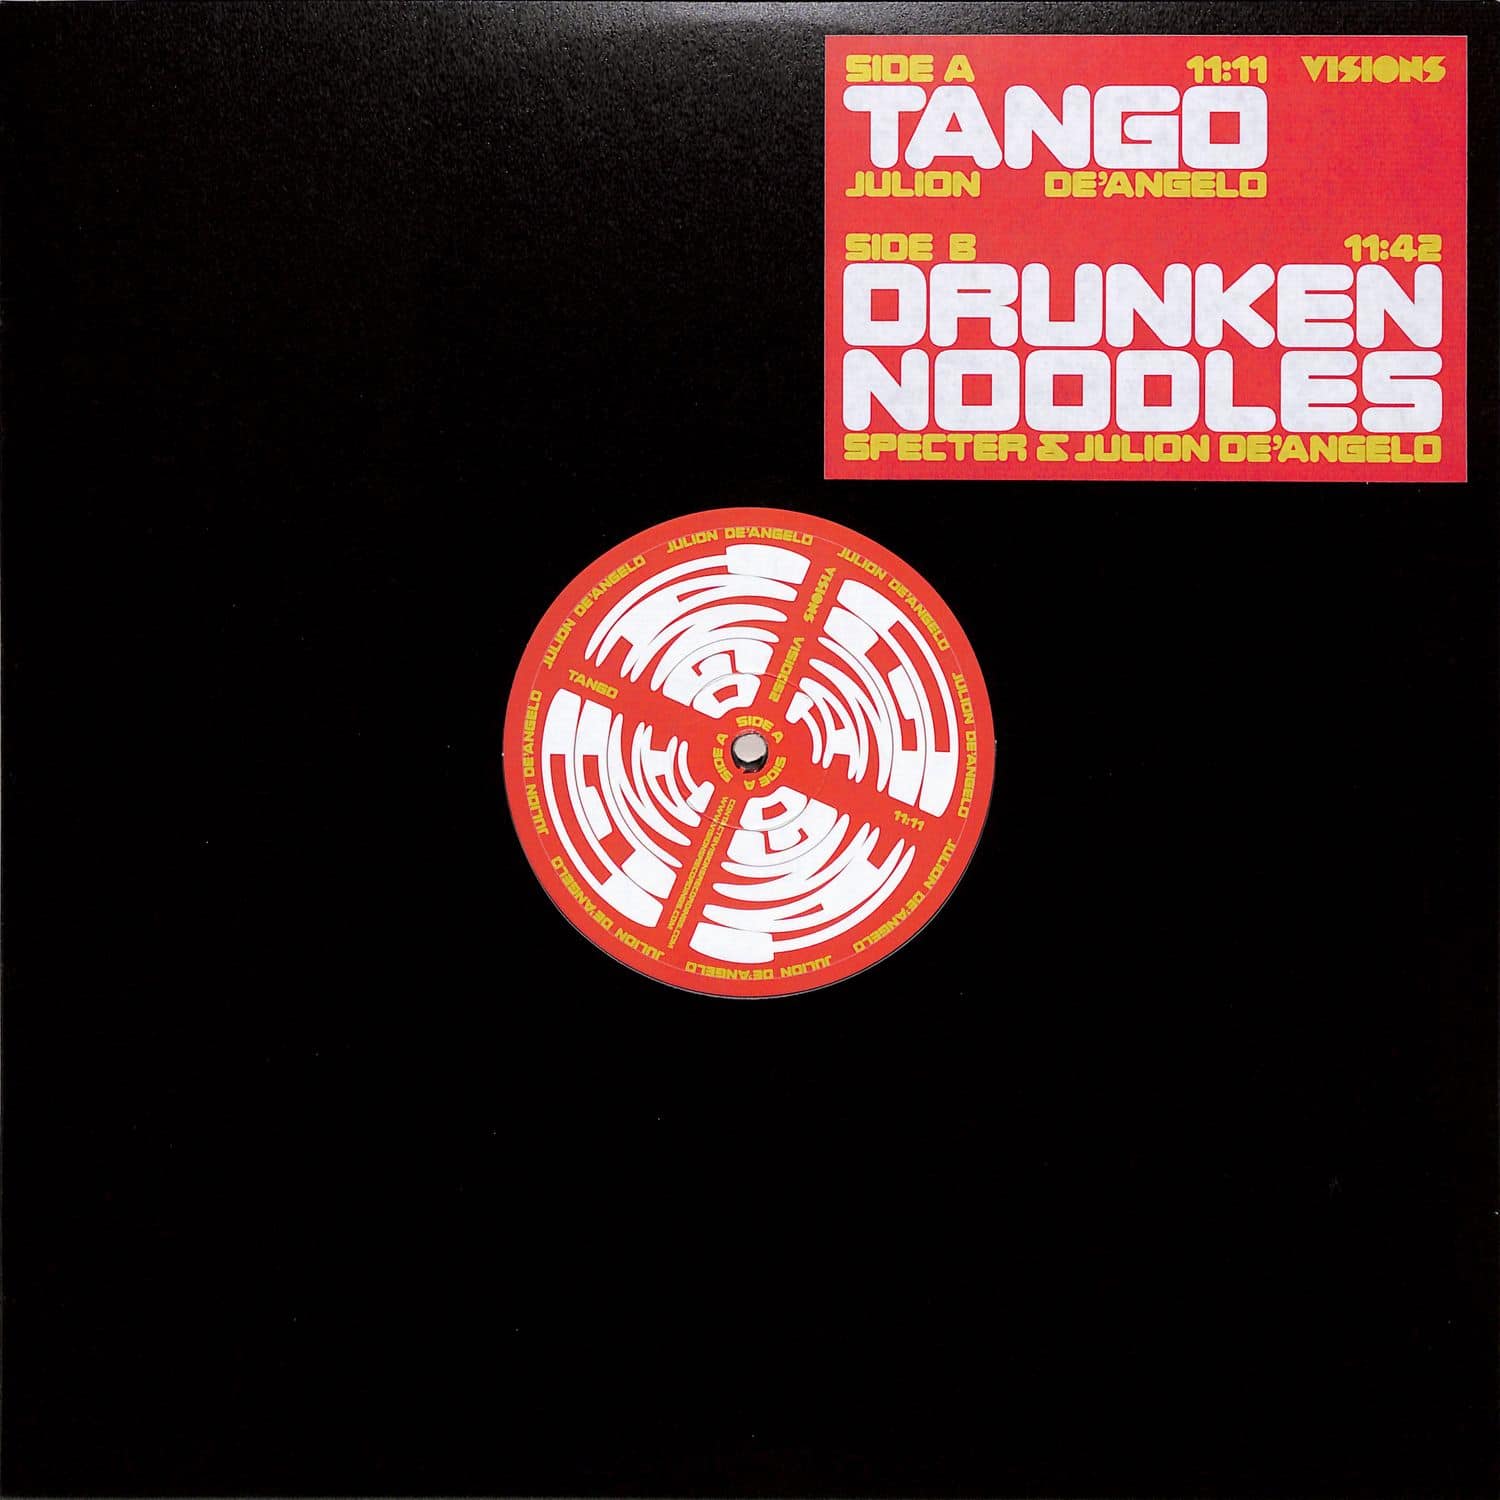 Julion De Angelo & Specter - TANGO / DRUNKEN NOODLES